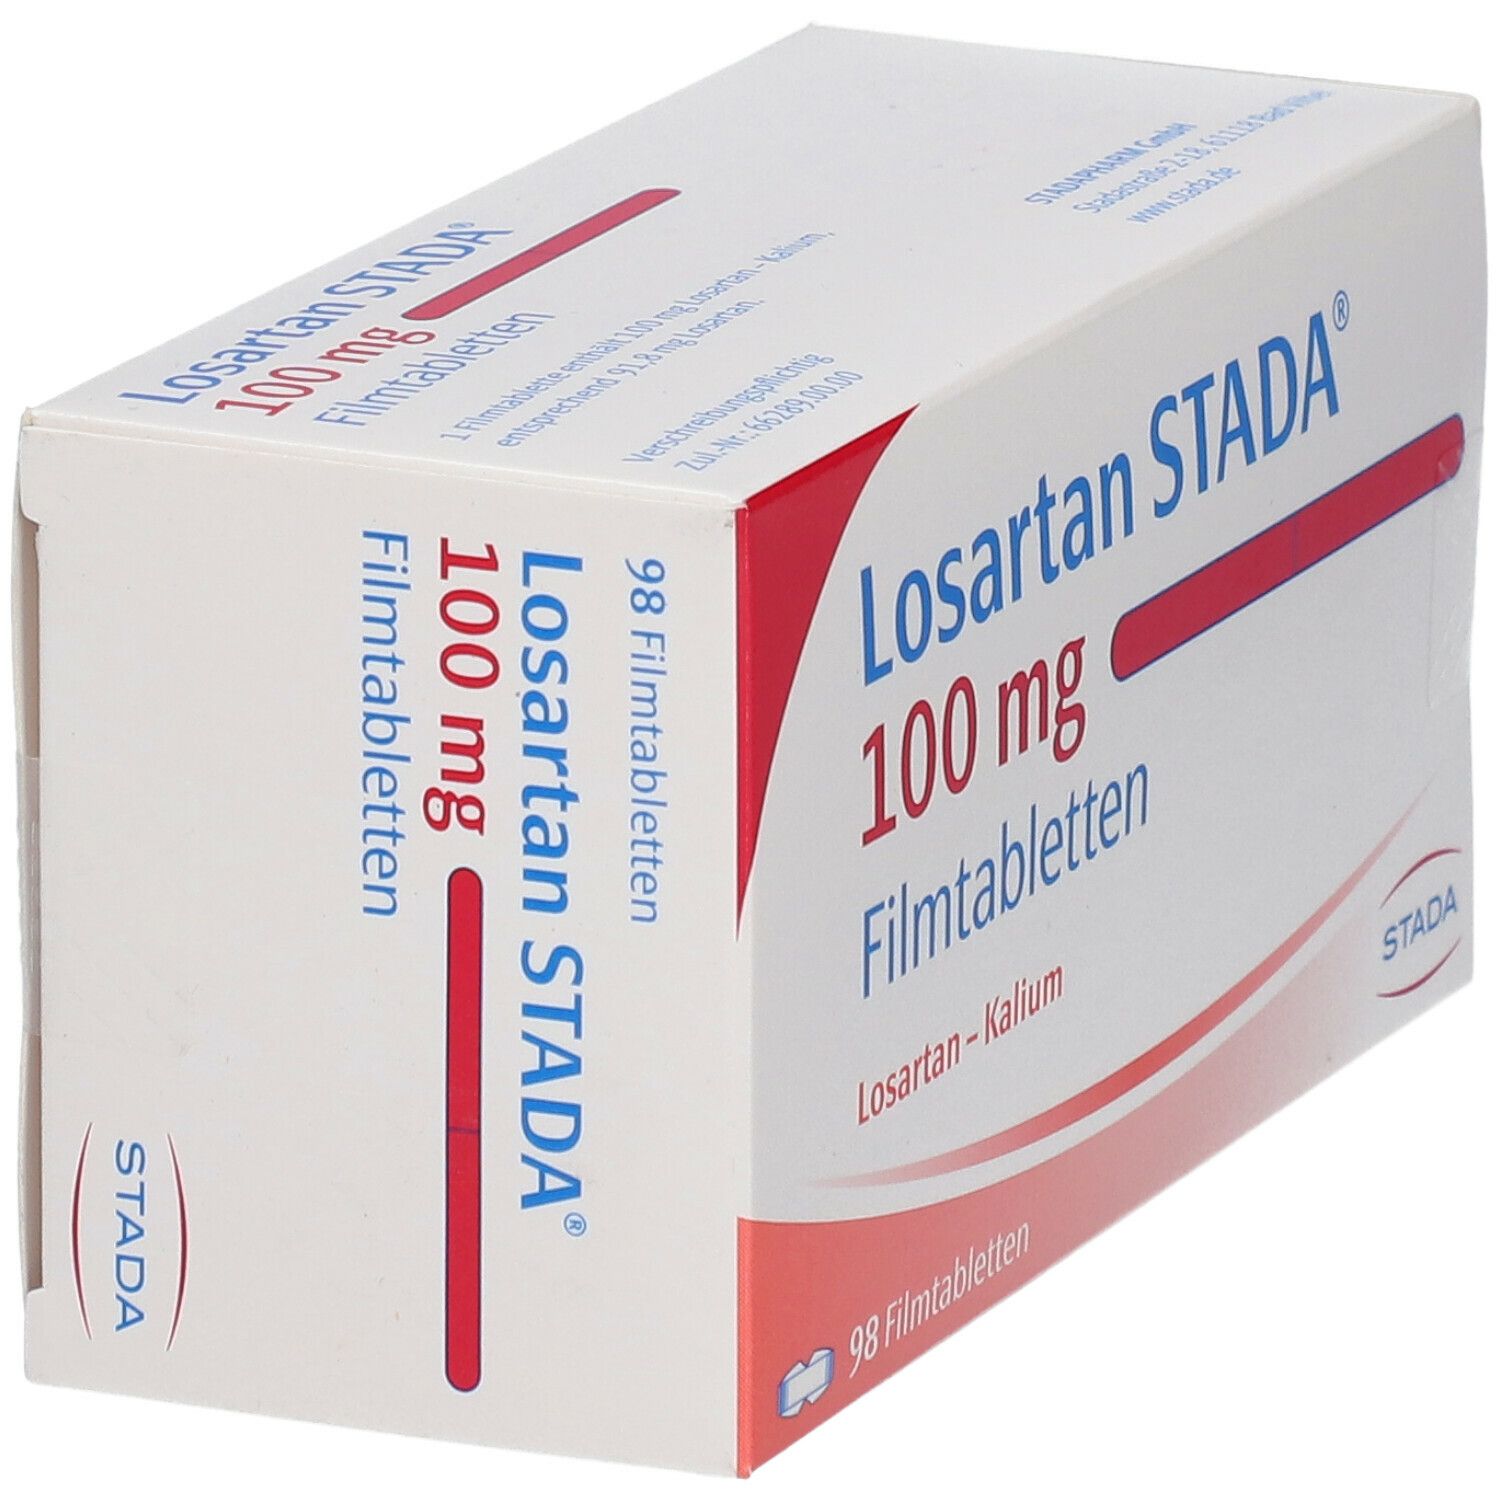 Losartan STADA® 100mg